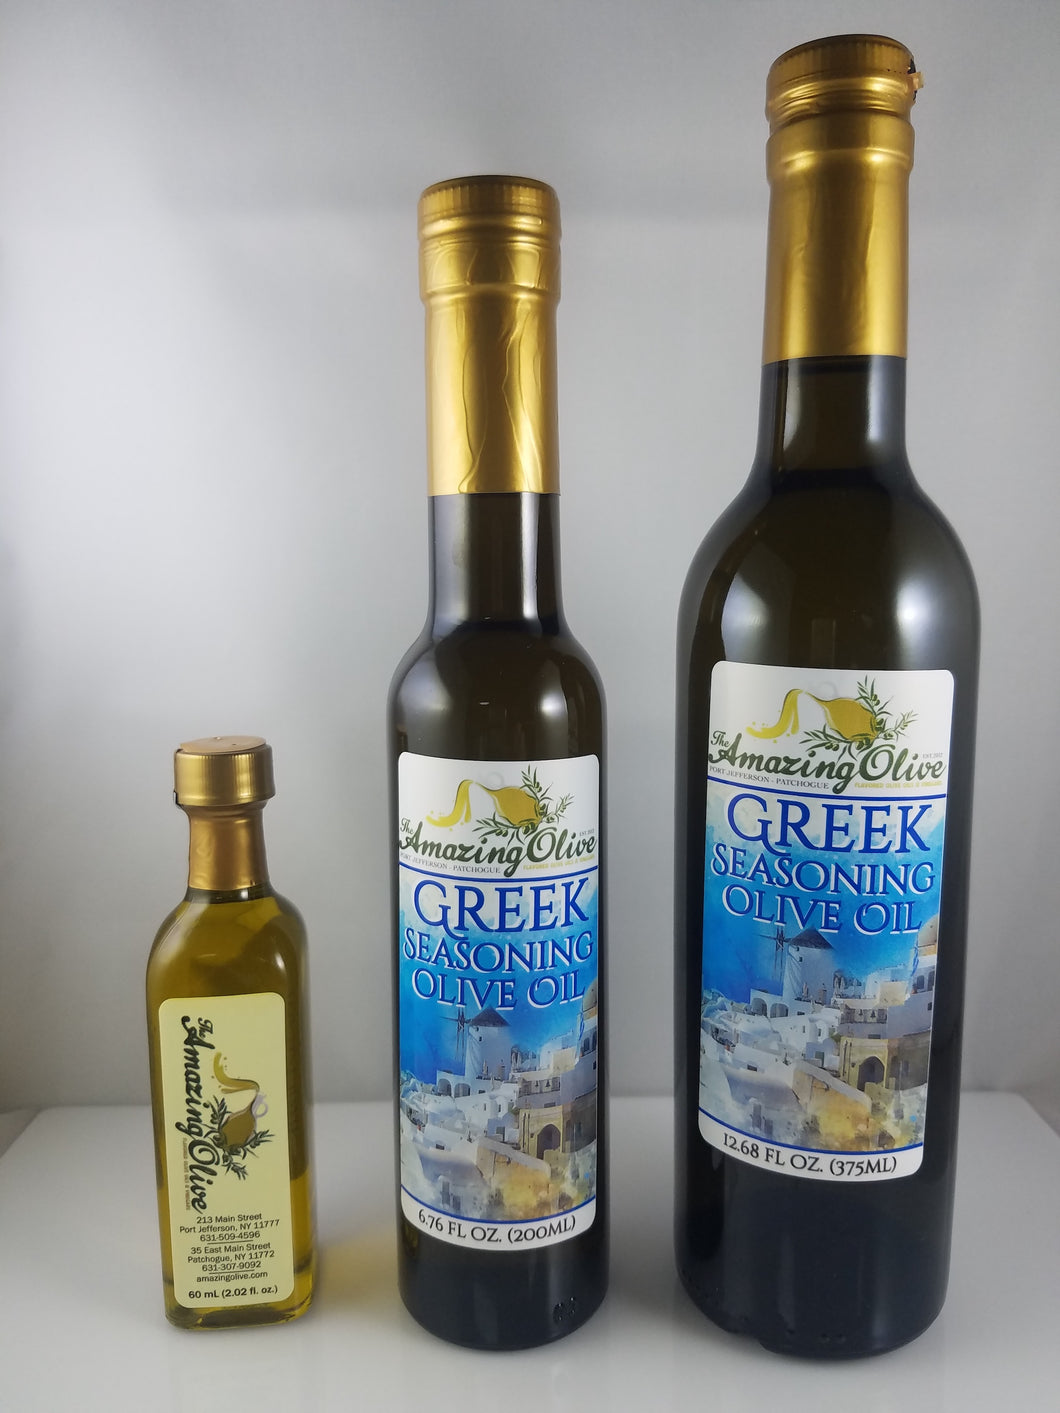 Greek Seasoning Olive Oil